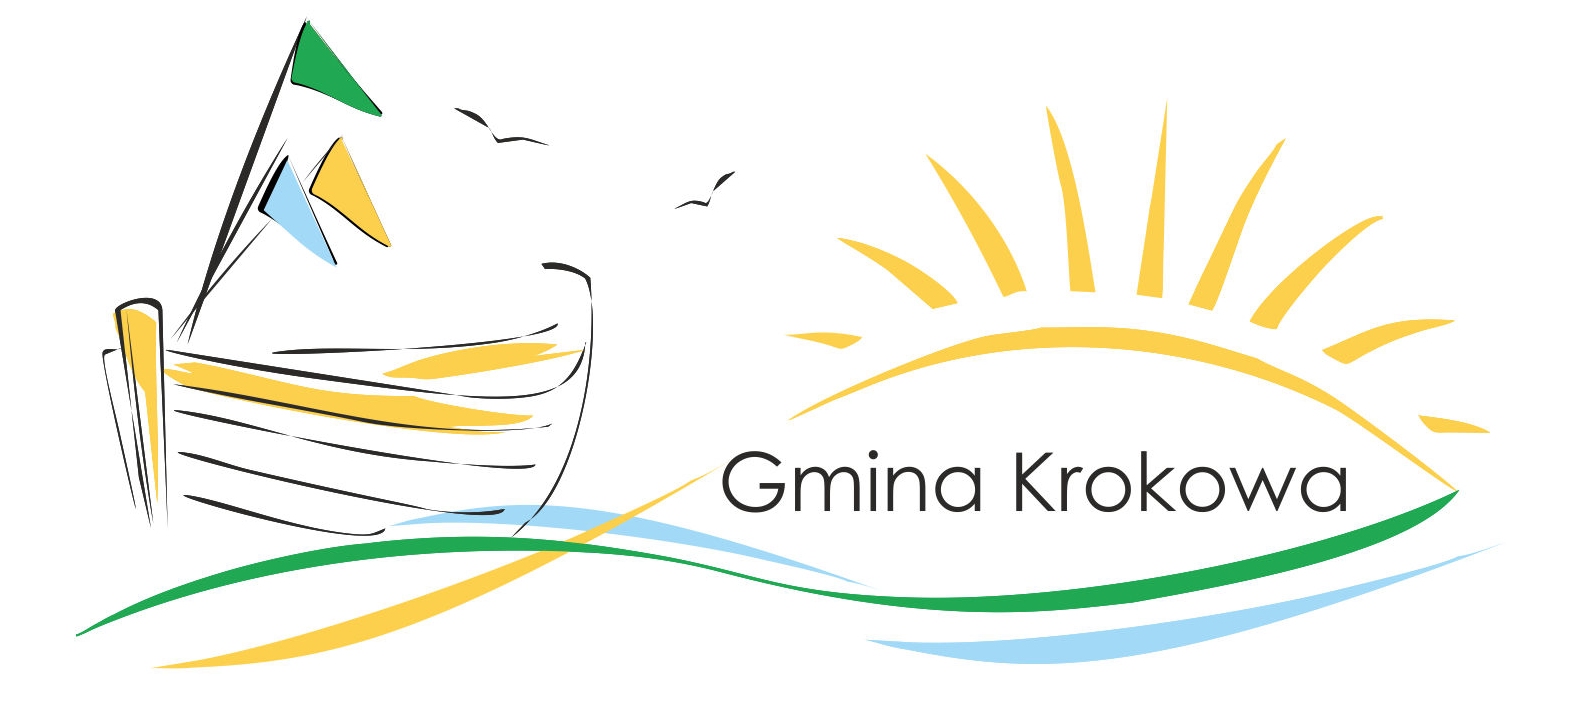 Nowe logo gminy Krokowa. Słońce i rybacka łódź. Podoba się?